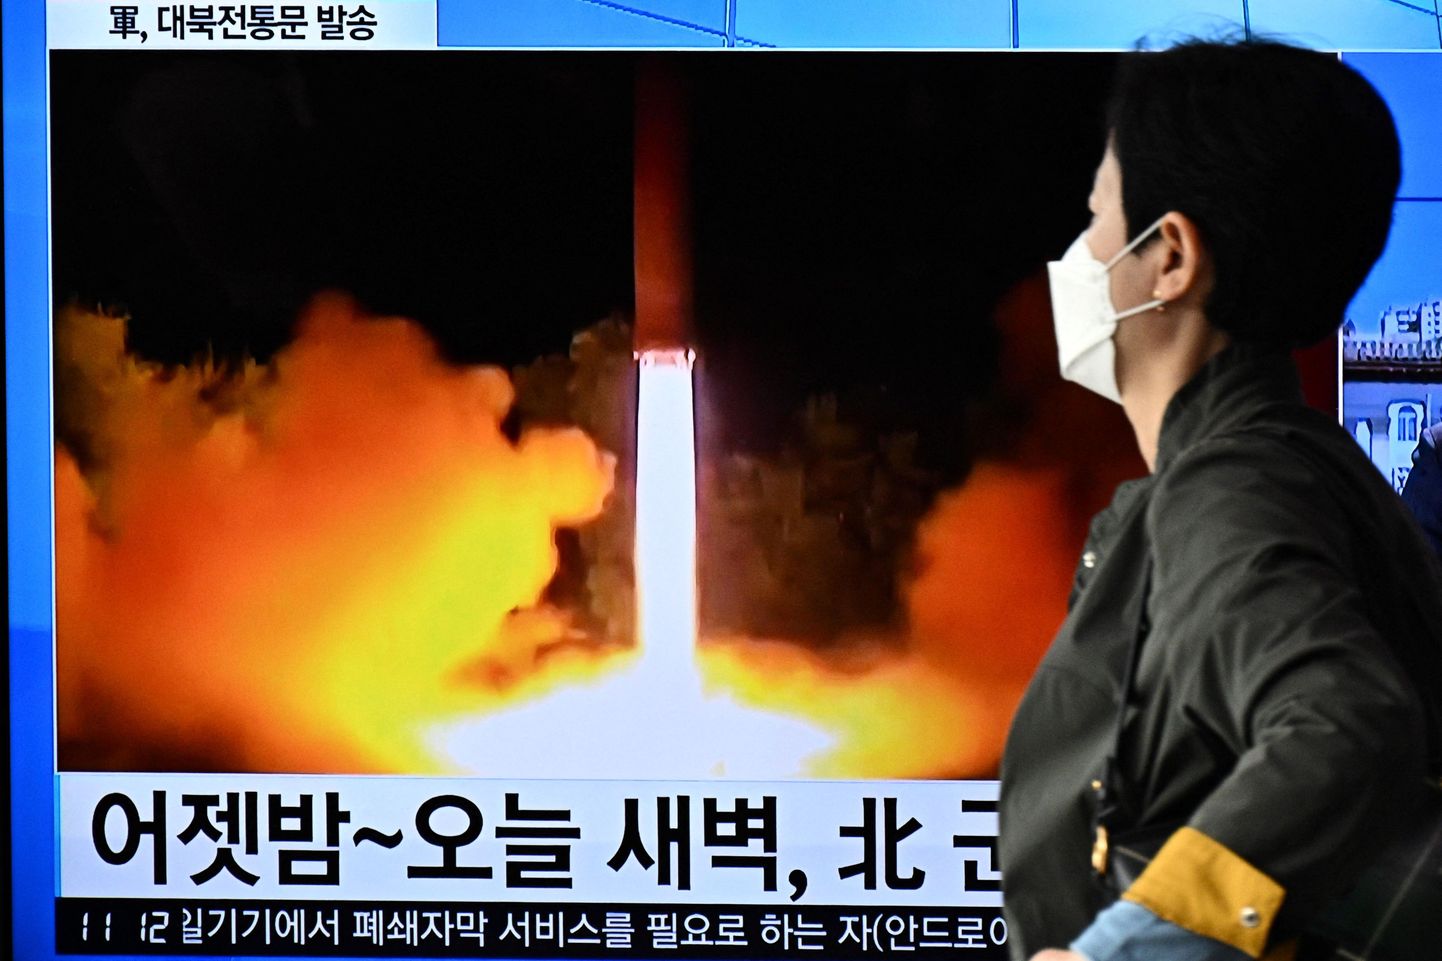 Souli elanik möödumas ekraanist, mis kuvab Põhja-Korea raketikatsetust.